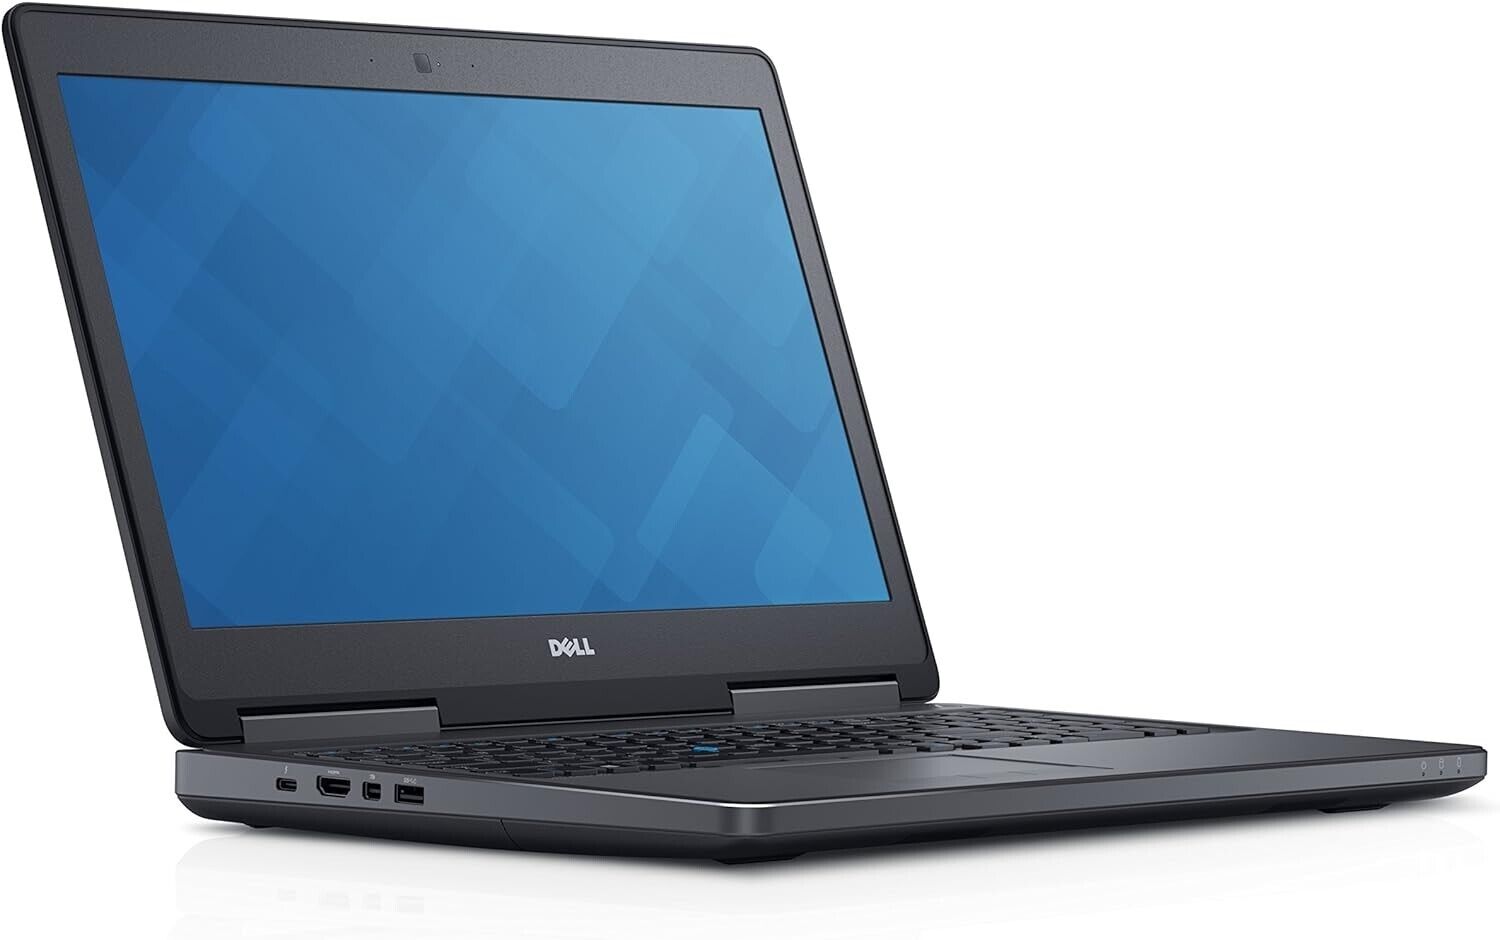 Dell Precision 7510 i7 6820HQ @2.7ghz 16GB 512GB M.2 Window 10 Laptop